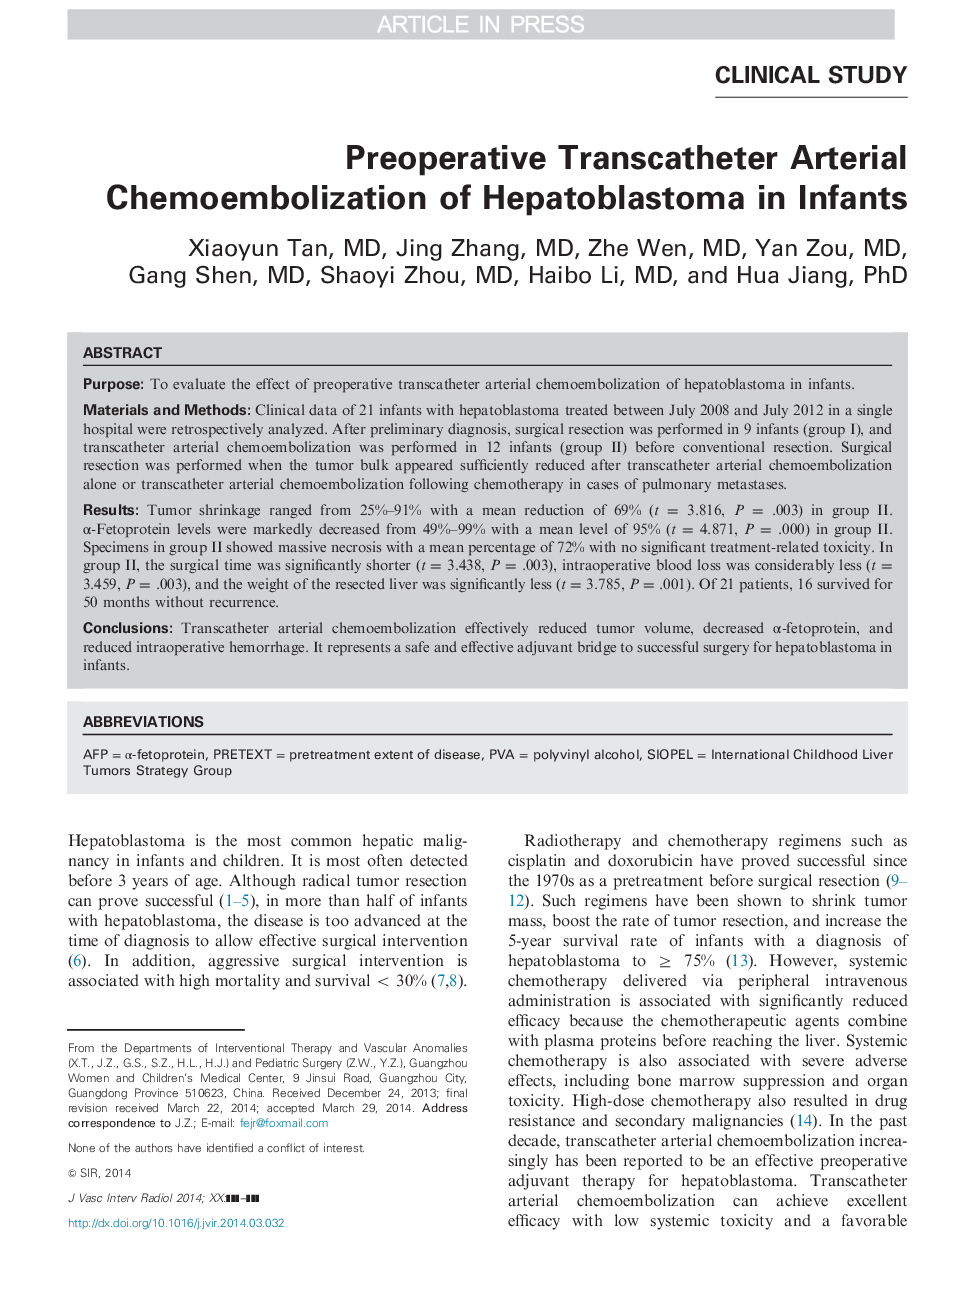 Preoperative Transcatheter Arterial Chemoembolization of Hepatoblastoma in Infants